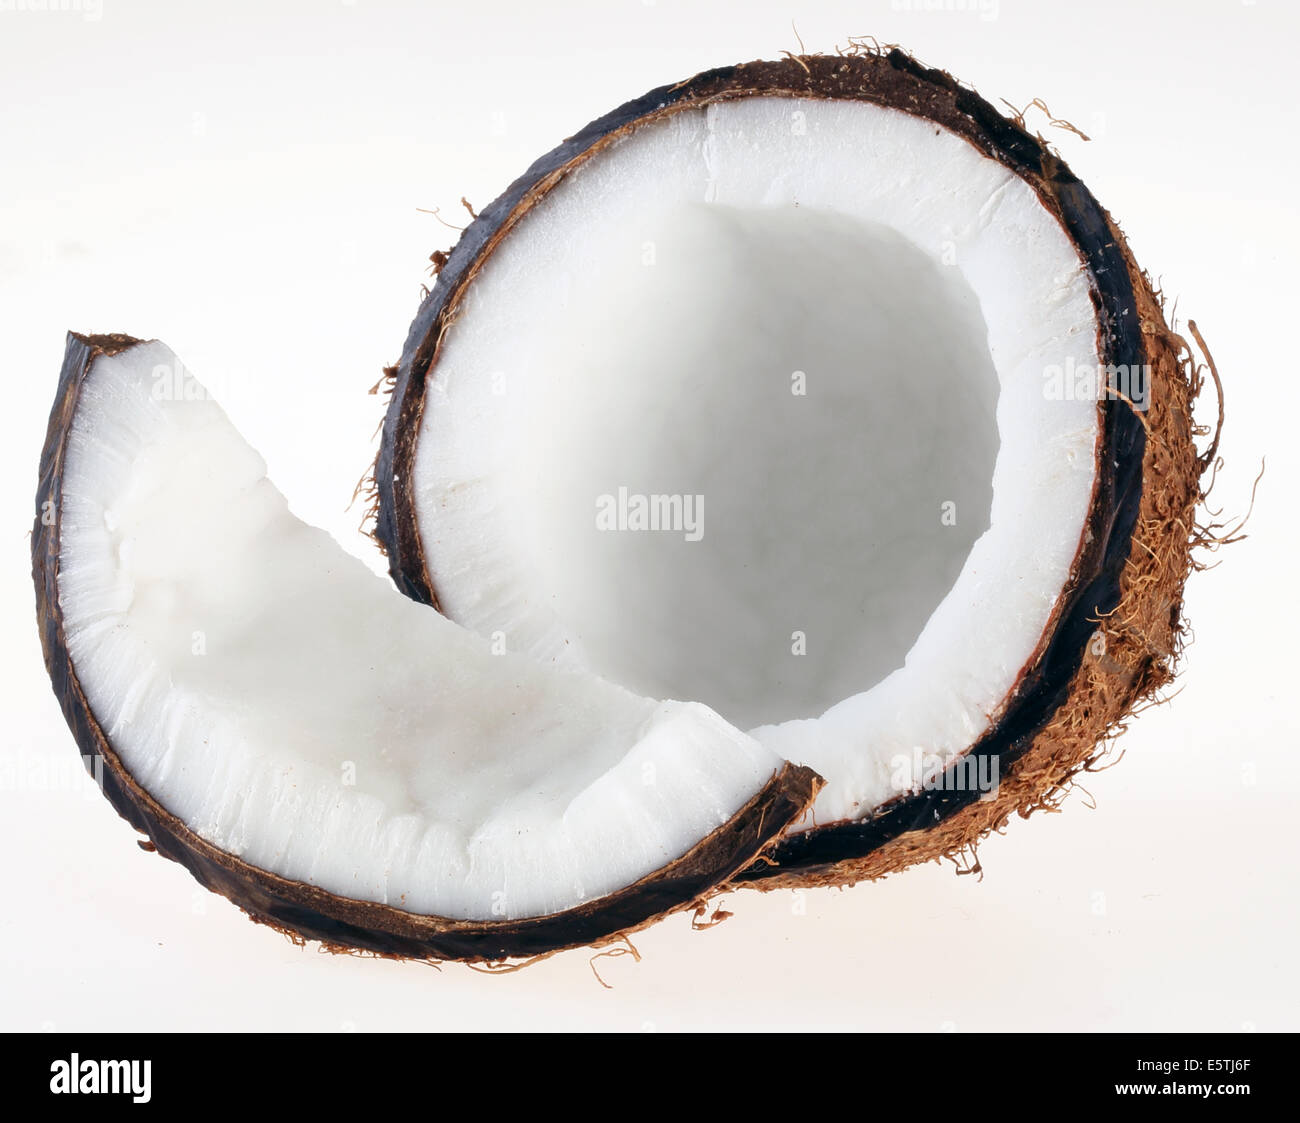 Noci di cocco fresco su bianco Foto Stock